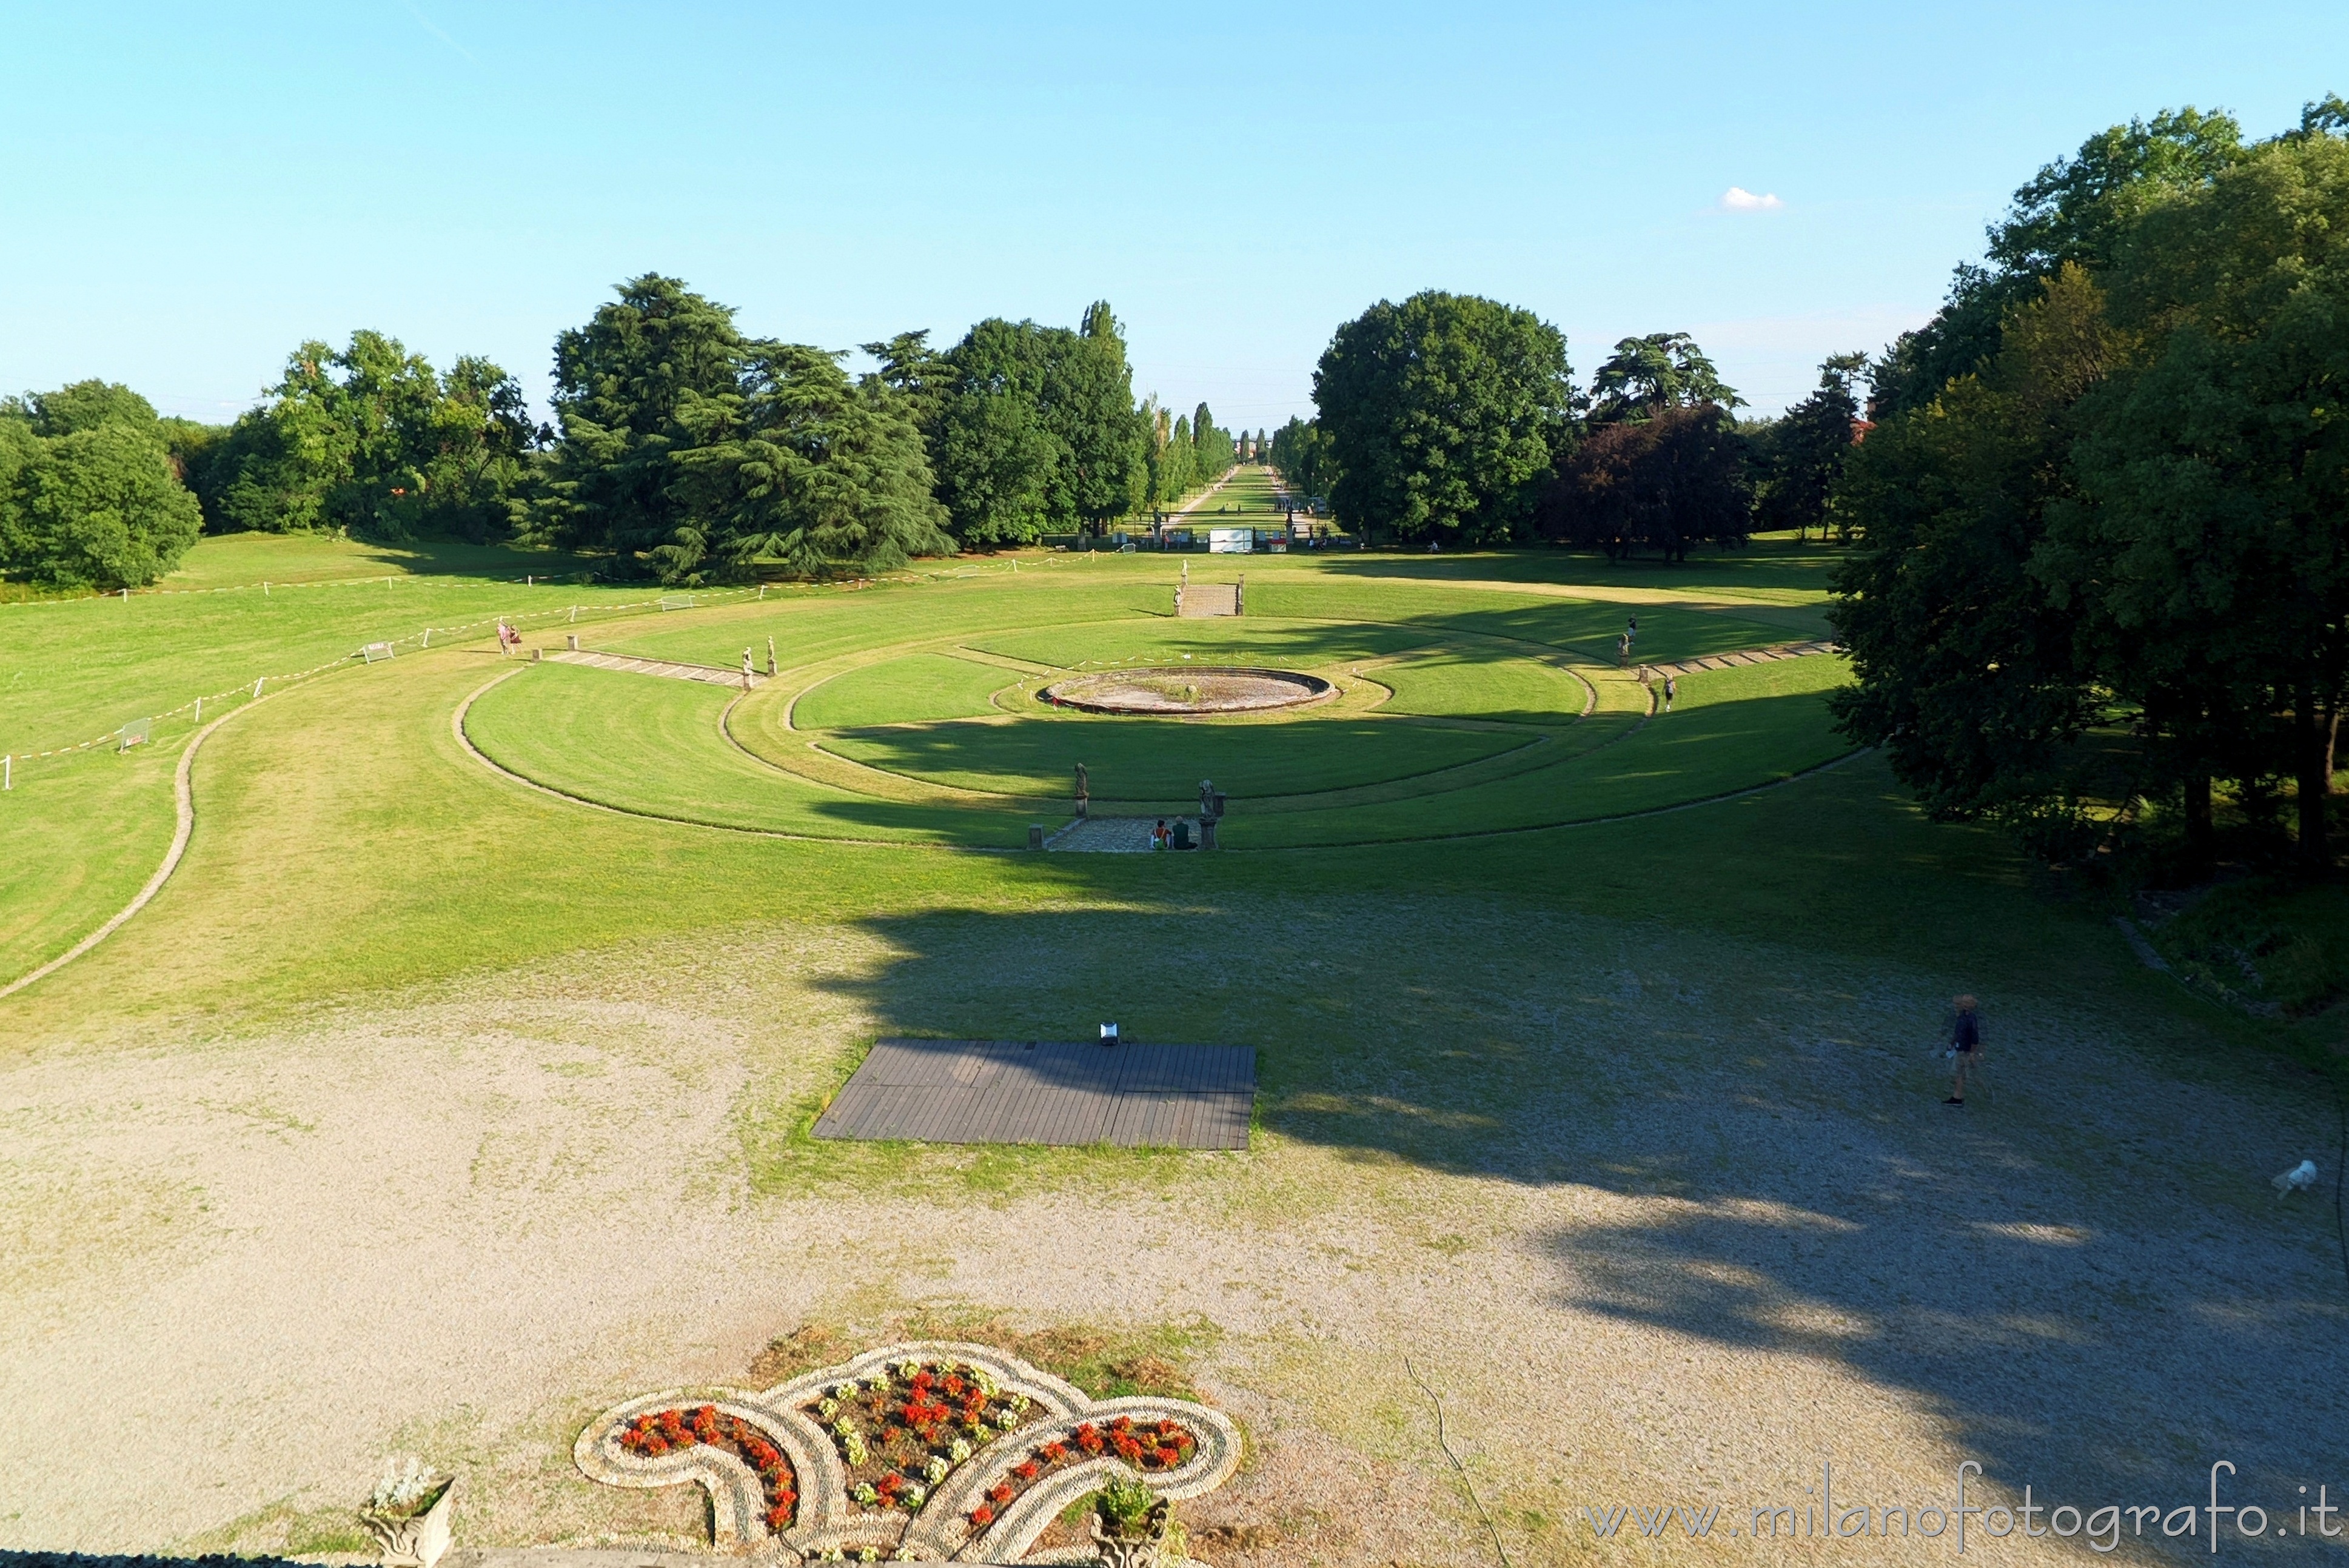 Varedo (Monza e Brianza, Italy): Park of Villa Bagatti Valsecchi - Varedo (Monza e Brianza, Italy)